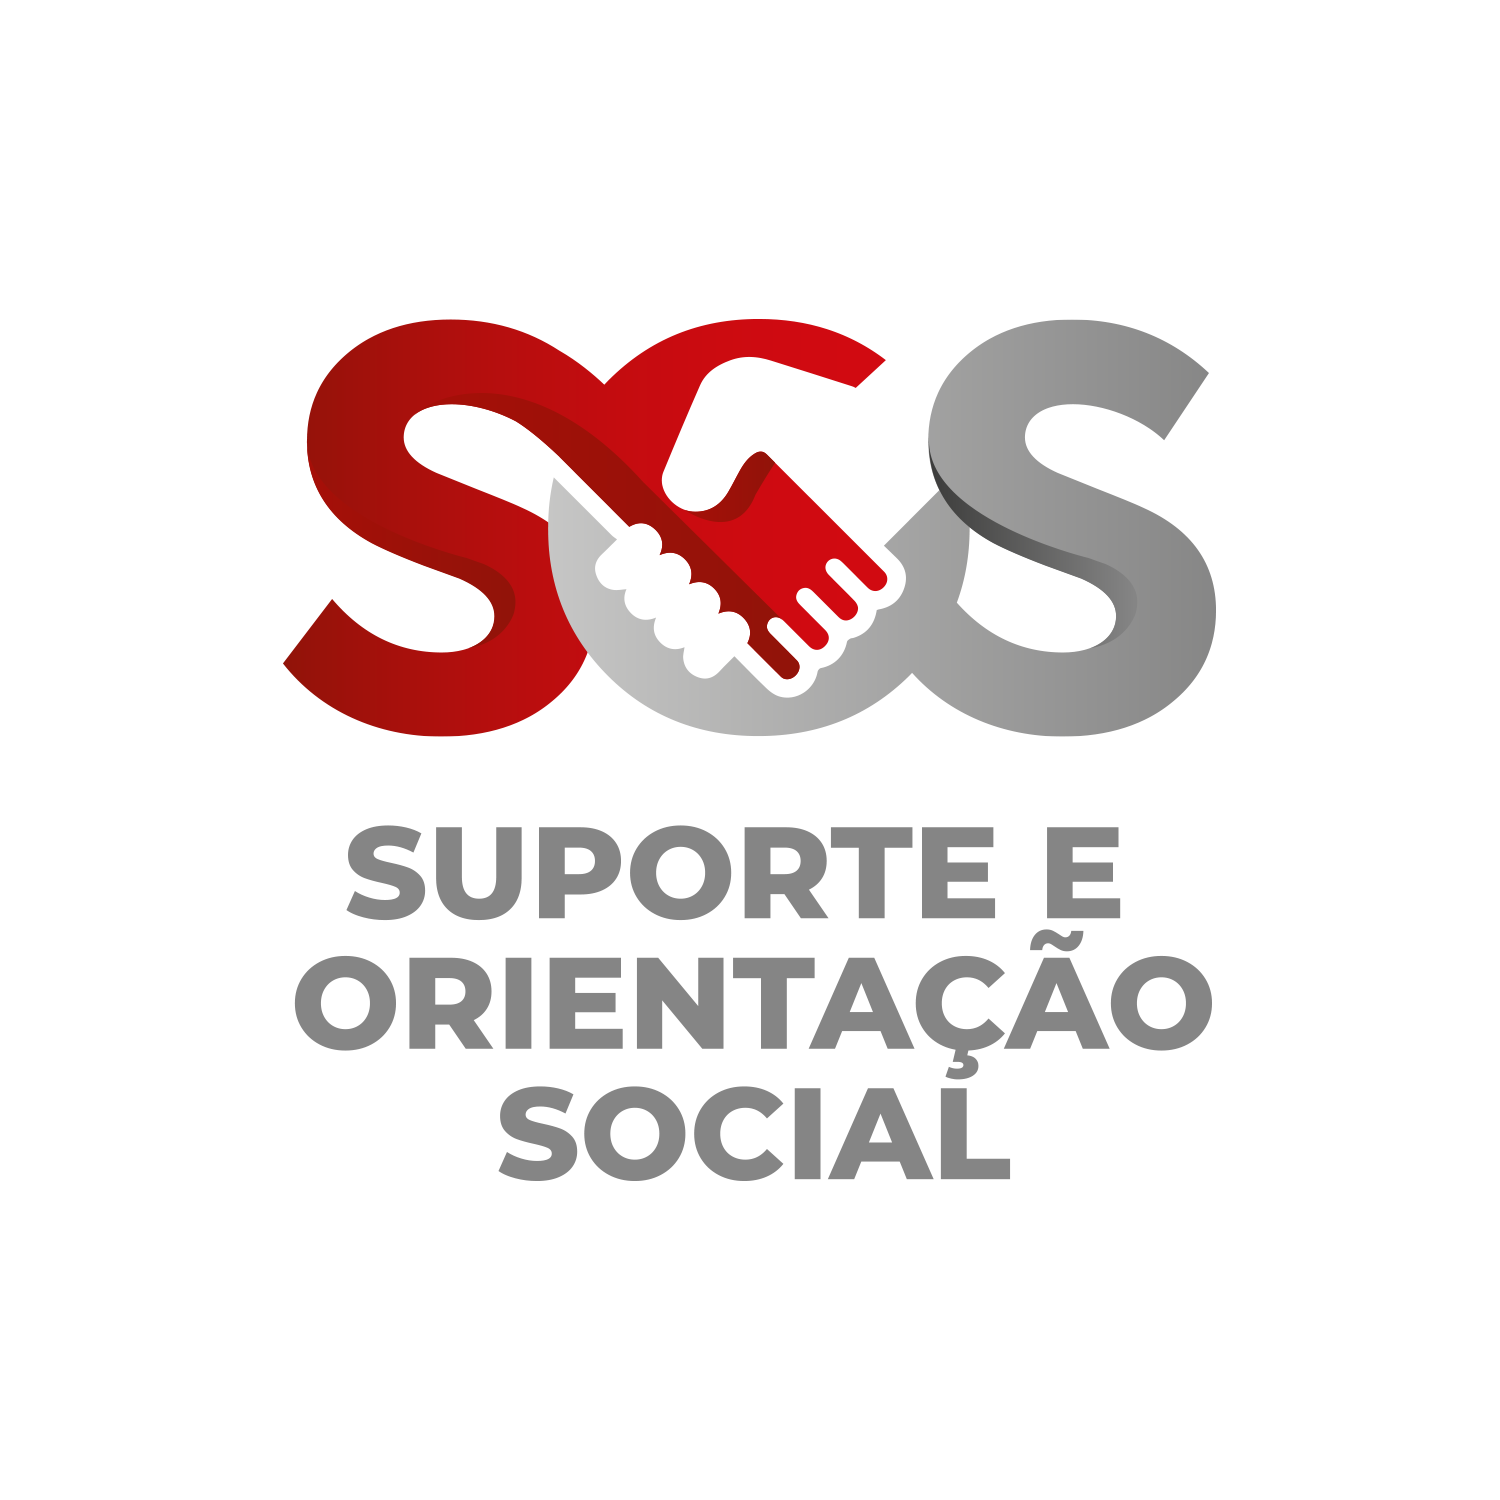 SOS - Suporte e orientação social